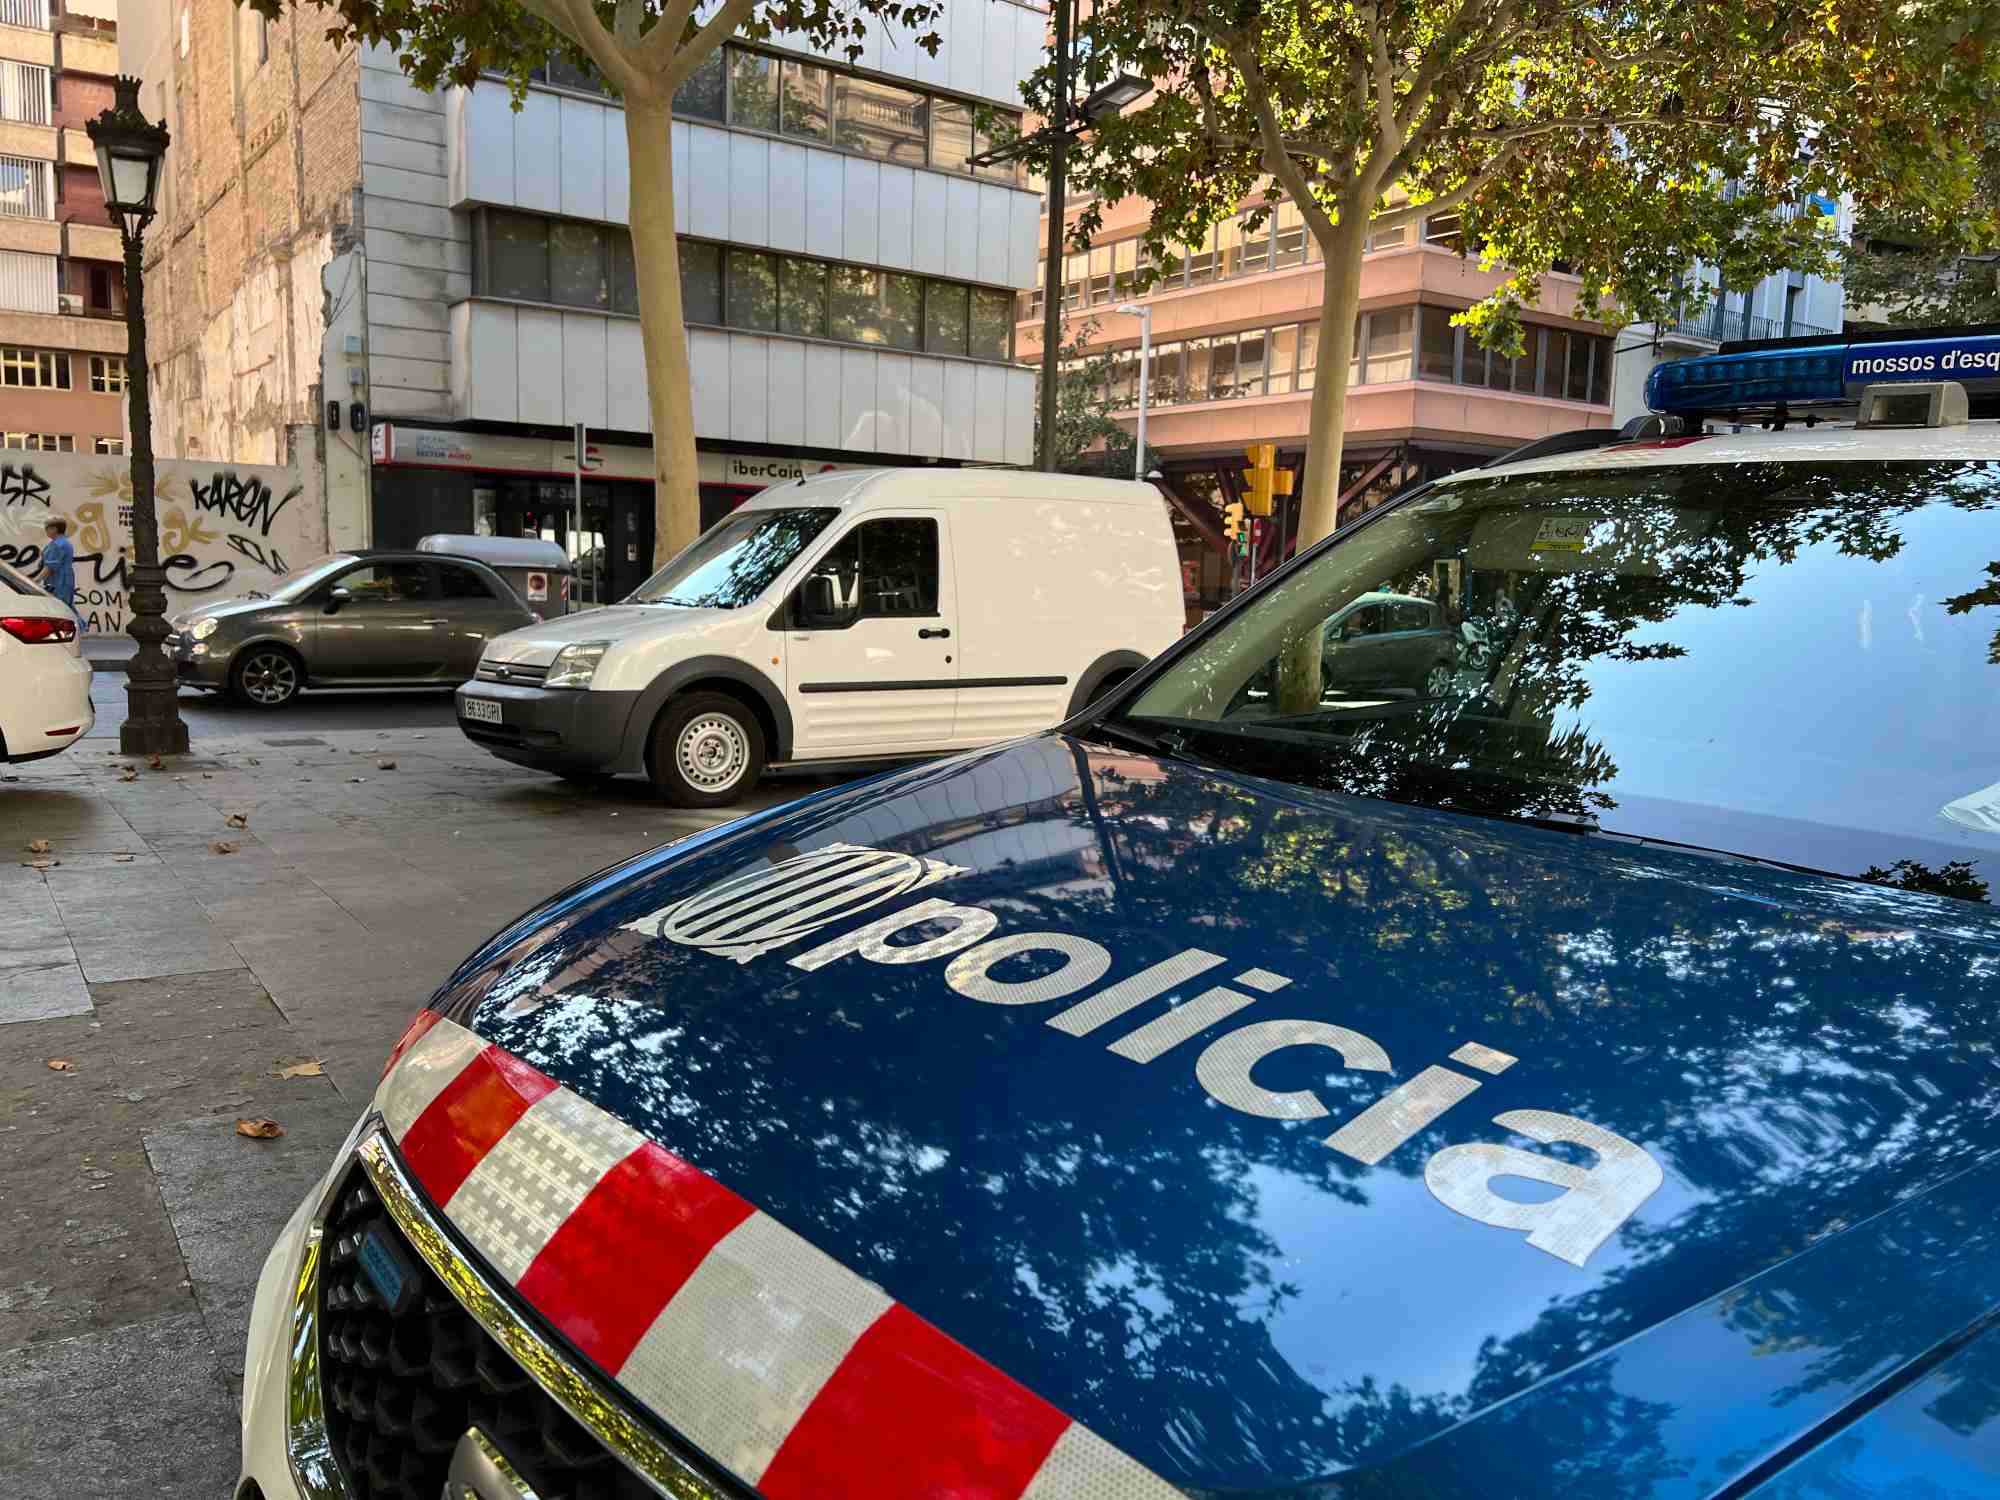 Alerta de robatoris a avis a Barcelona: entren als pisos vestits d'electricistes i s'emporten joies i diners